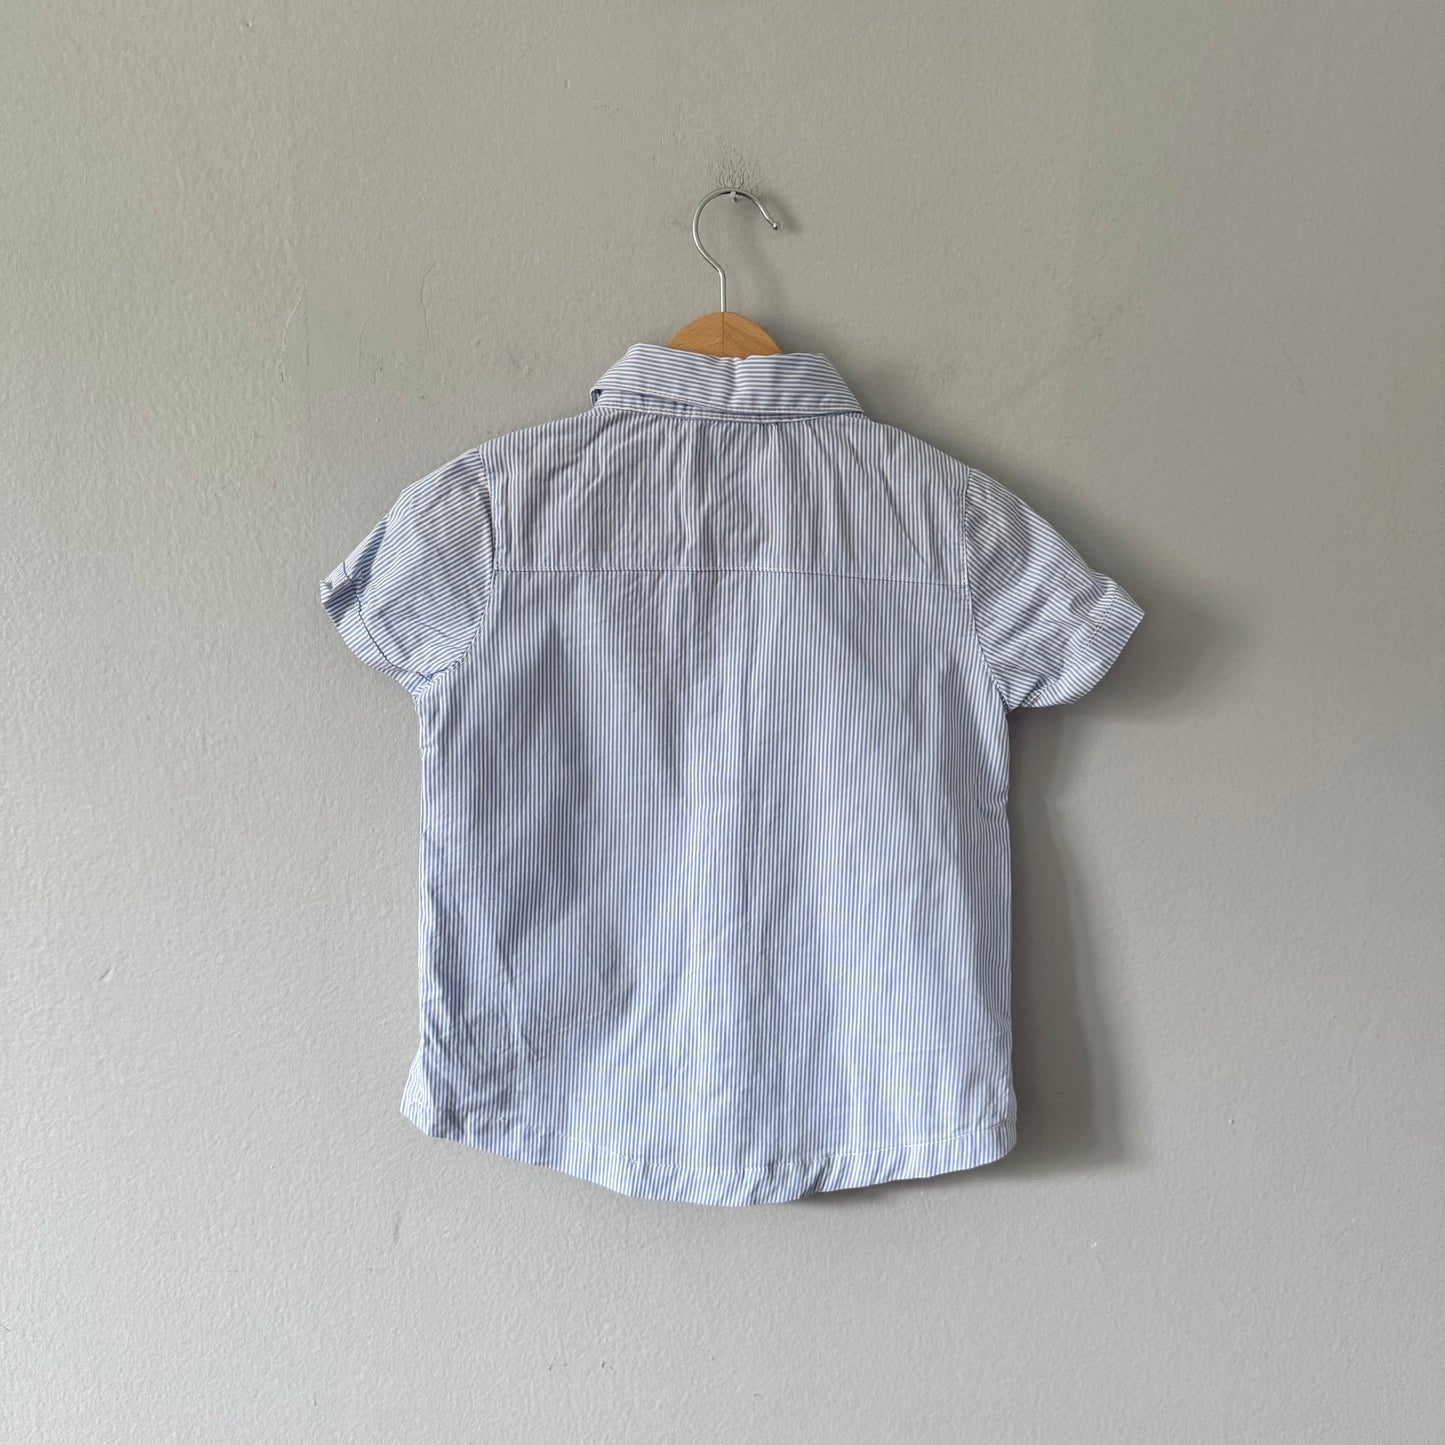 Birdz / Blue x white stripe shirt / 2Y